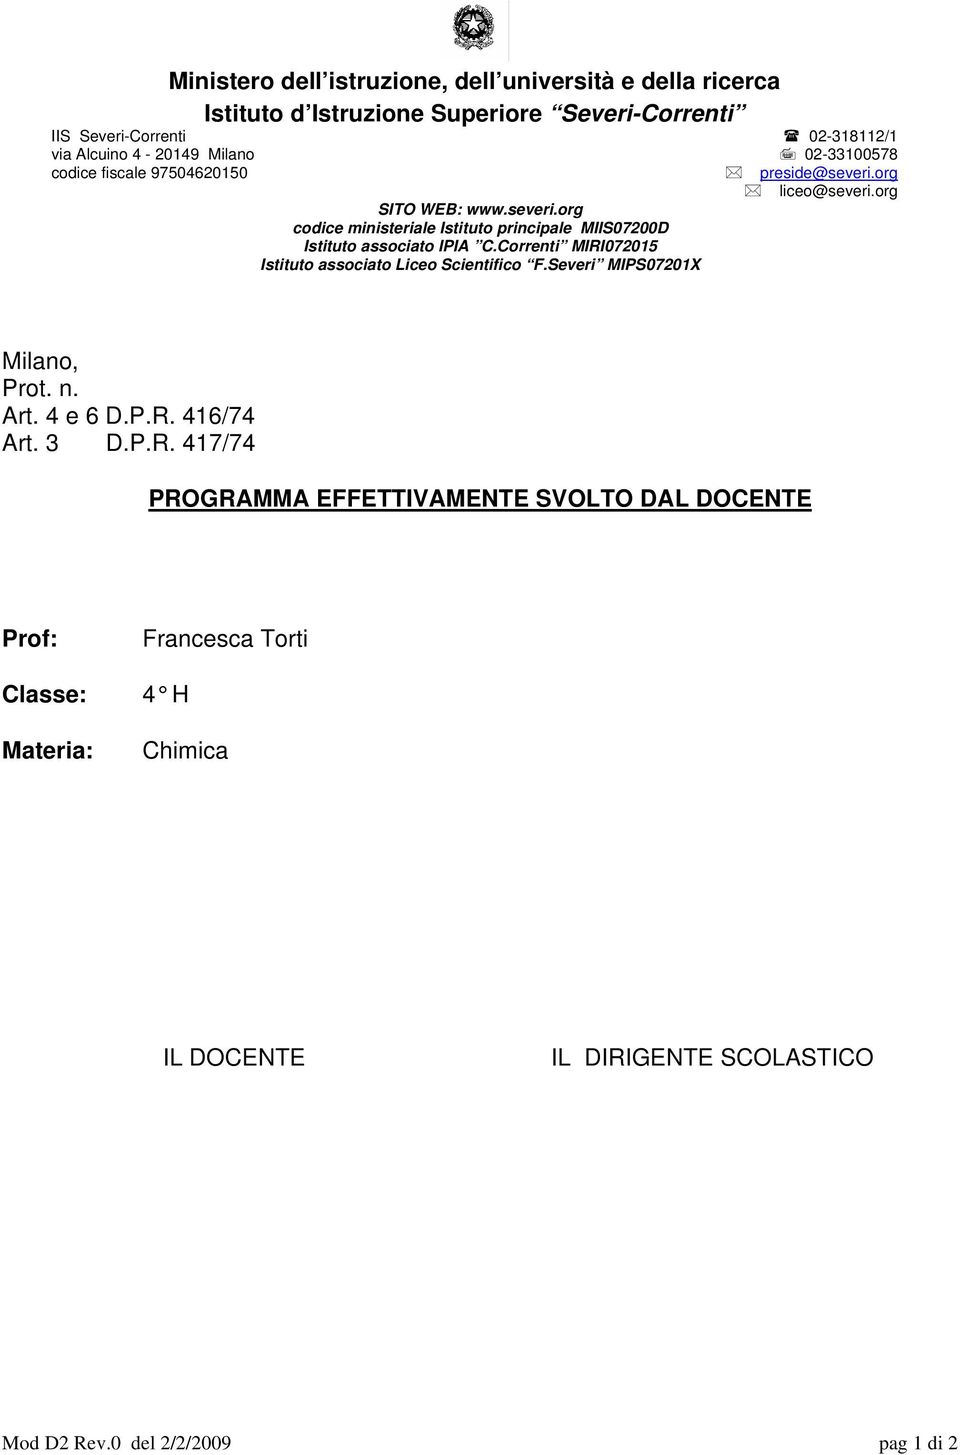 Correnti MIRI072015 Istituto associato Liceo Scientifico F.Severi MIPS07201X Milano, Prot. n. Art. 4 e 6 D.P.R. 416/74 Art. 3 D.P.R. 417/74 PROGRAMMA EFFETTIVAMENTE SVOLTO DAL DOCENTE Prof: Classe: Materia: Francesca Torti 4 H Chimica IL DOCENTE IL DIRIGENTE SCOLASTICO Mod D2 Rev.